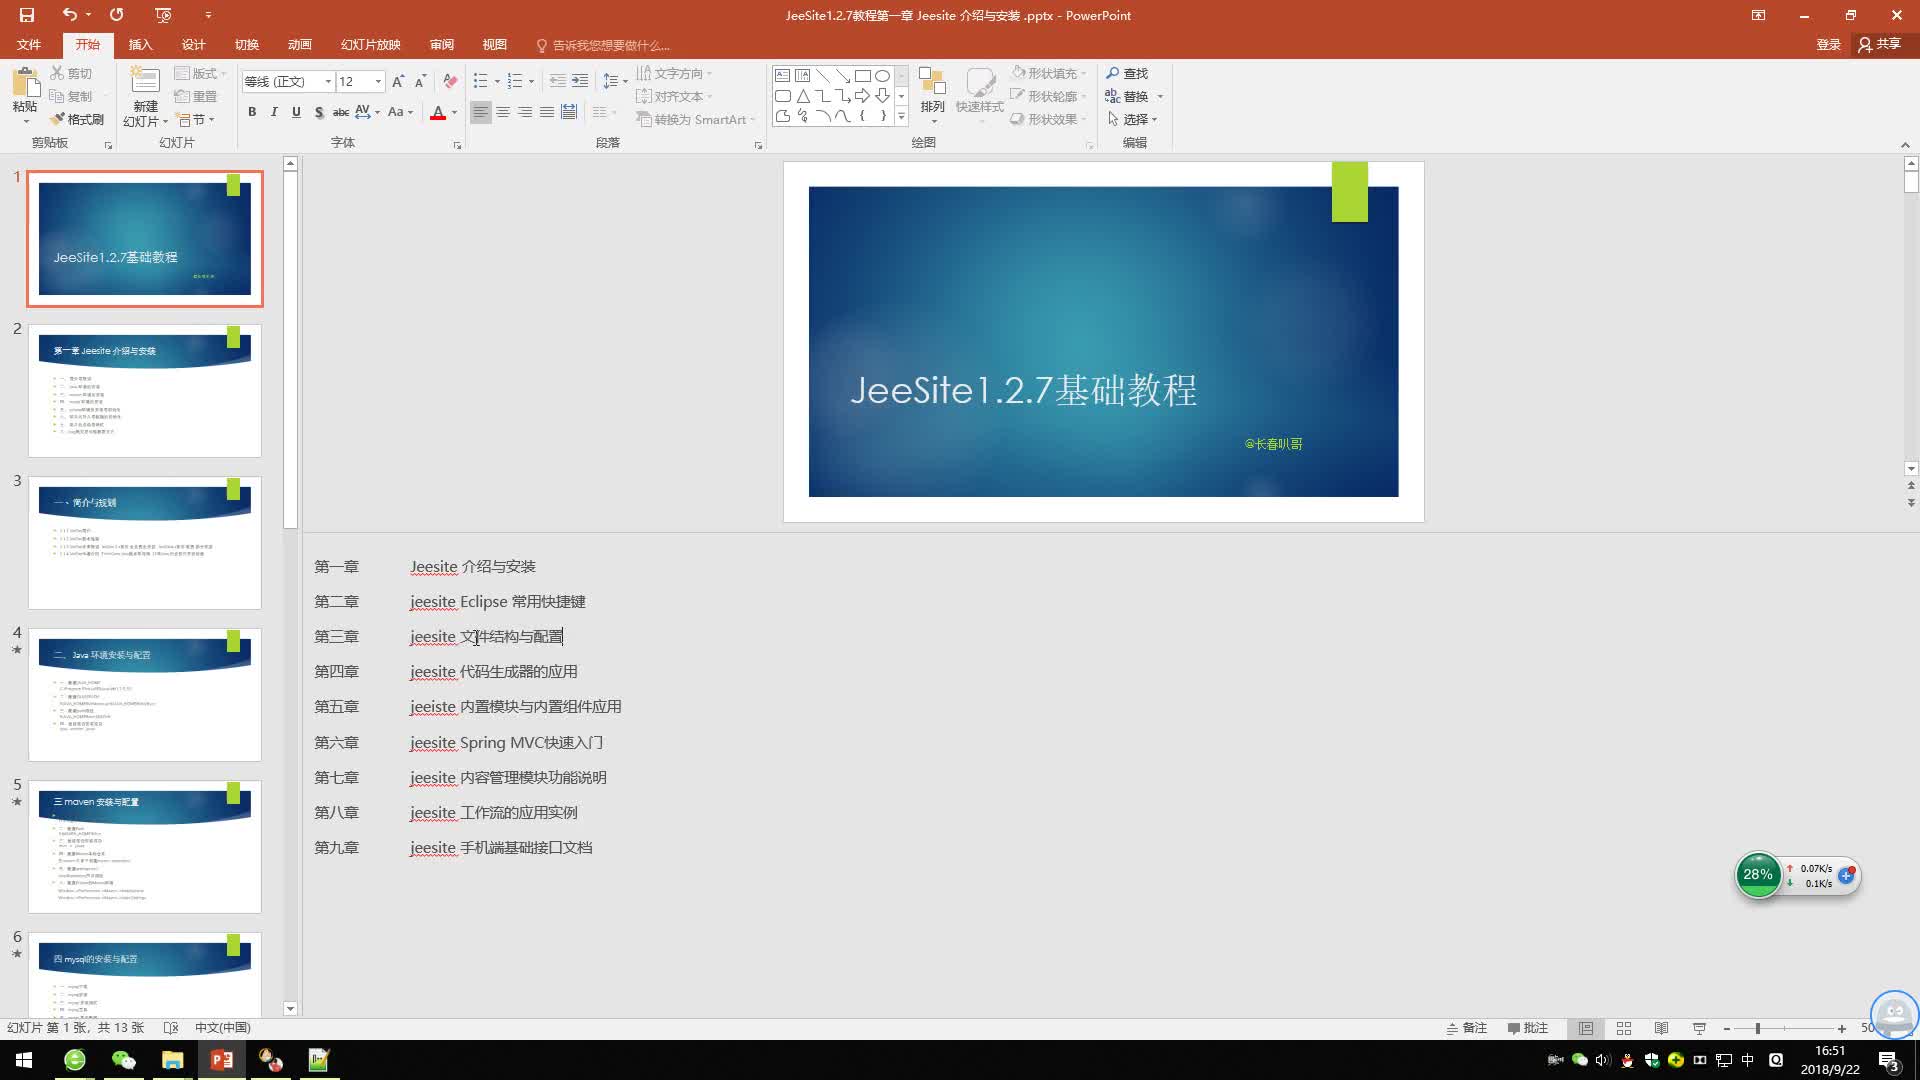 JeeSite 1.2.7 入门基础教程